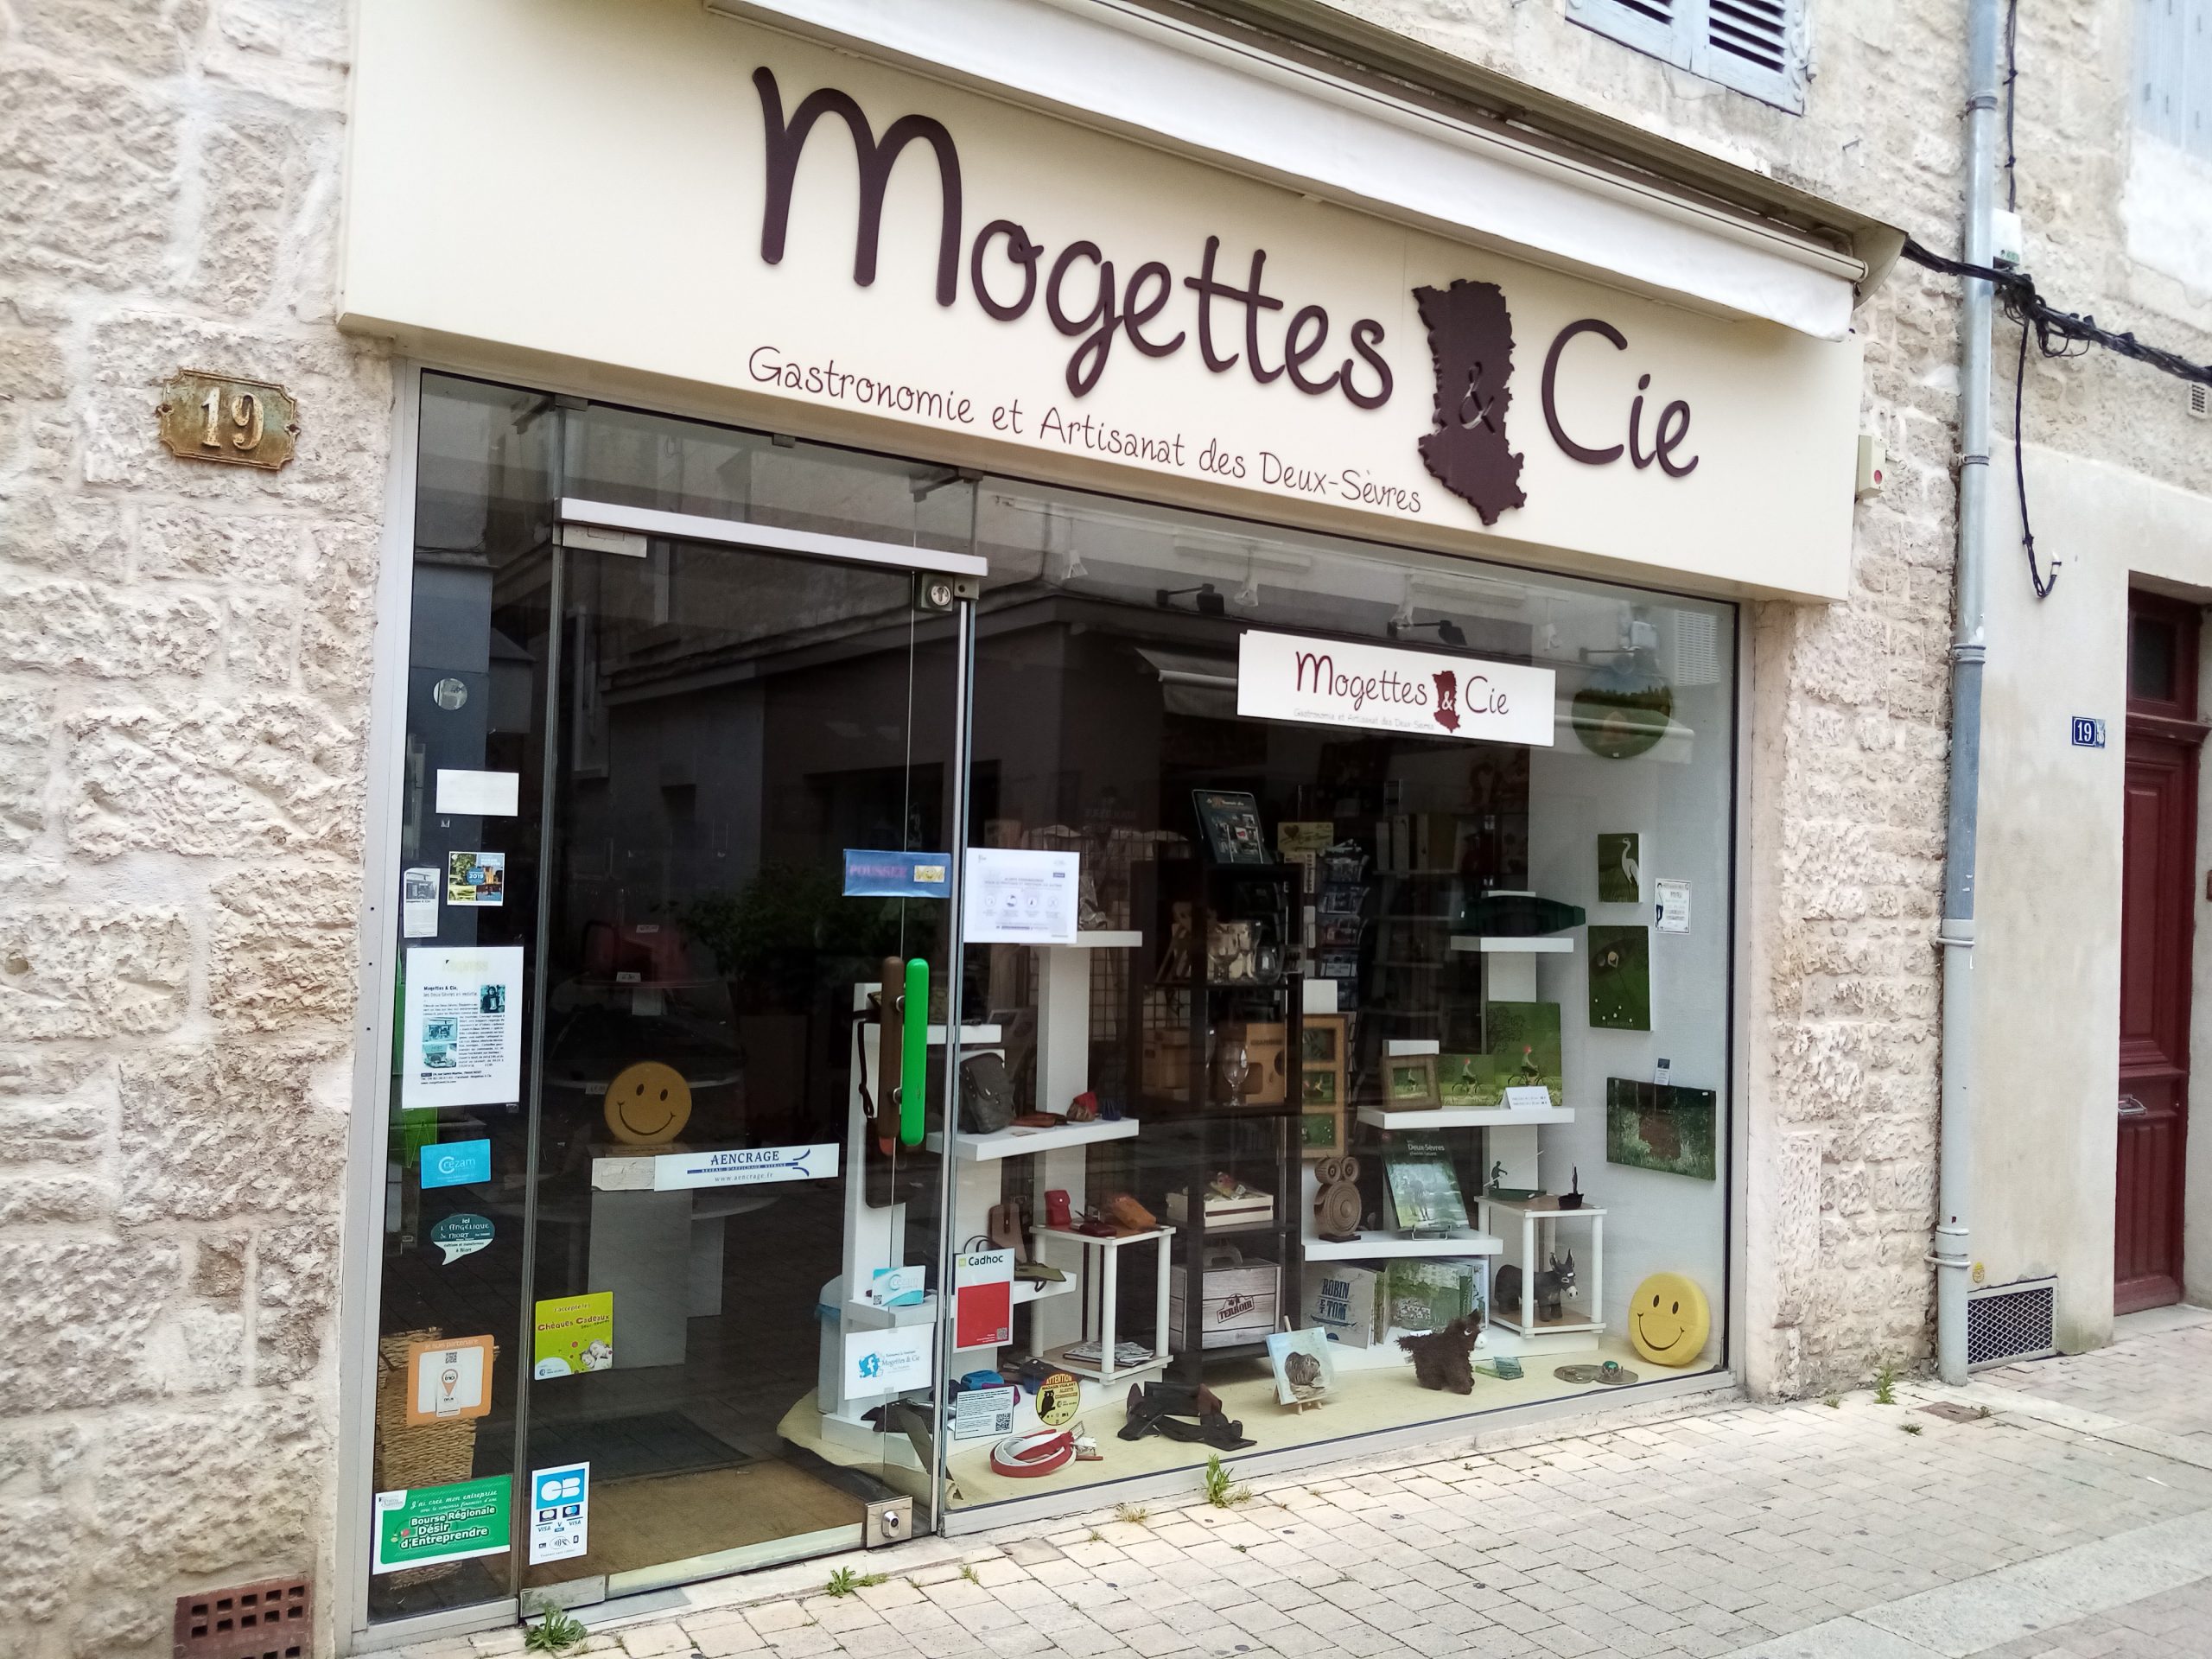 Boutique Mogettes & Cie